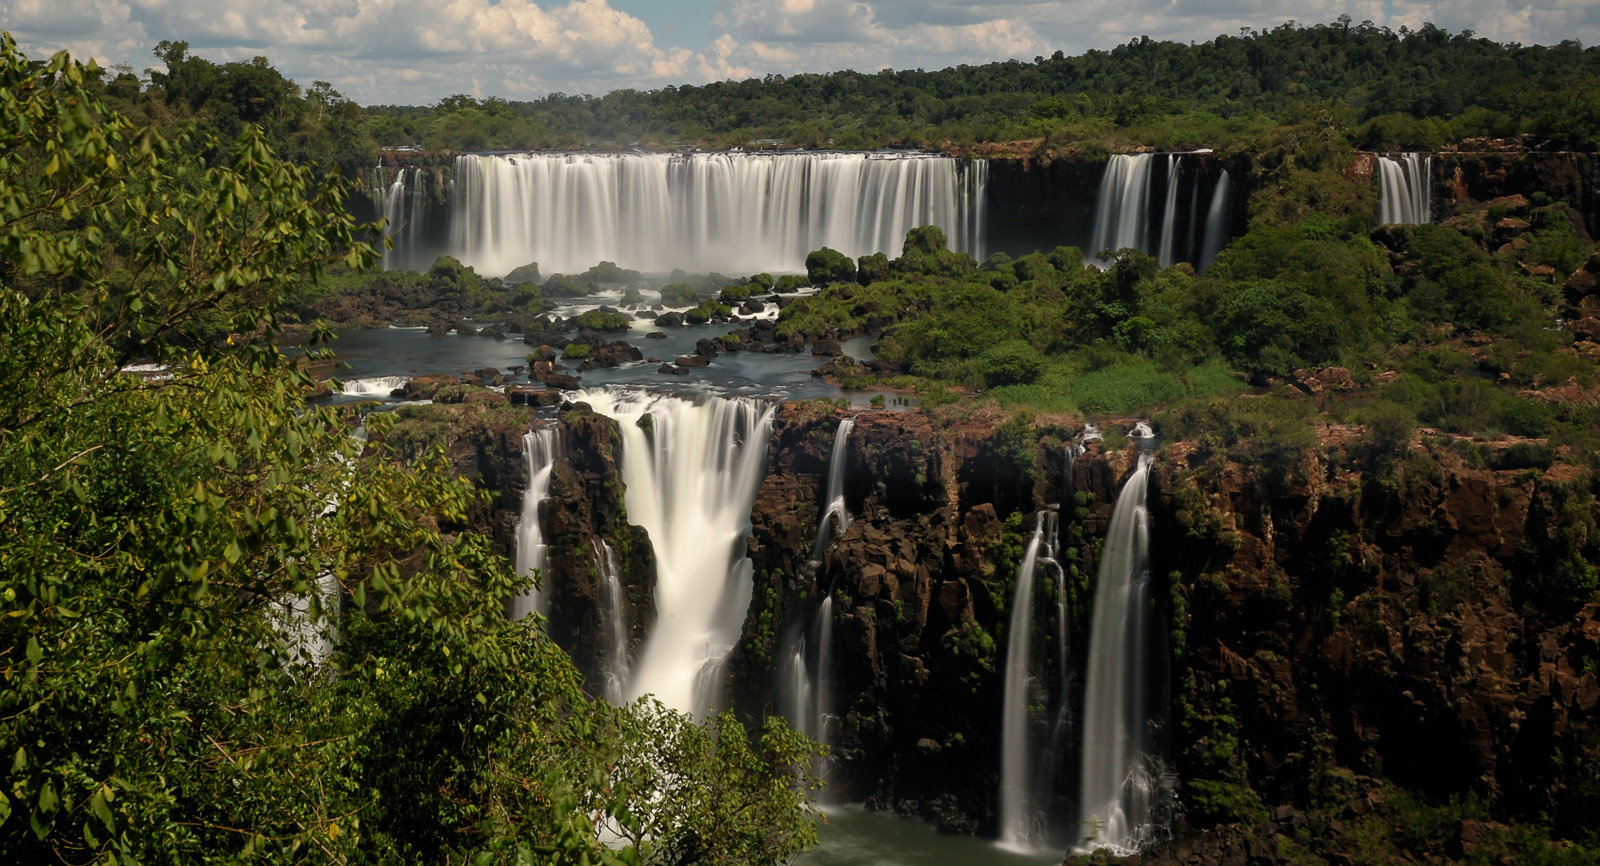 Cataratas del Iguazu [40 mm, 15.0 Sek. bei f / 22, ISO 200]